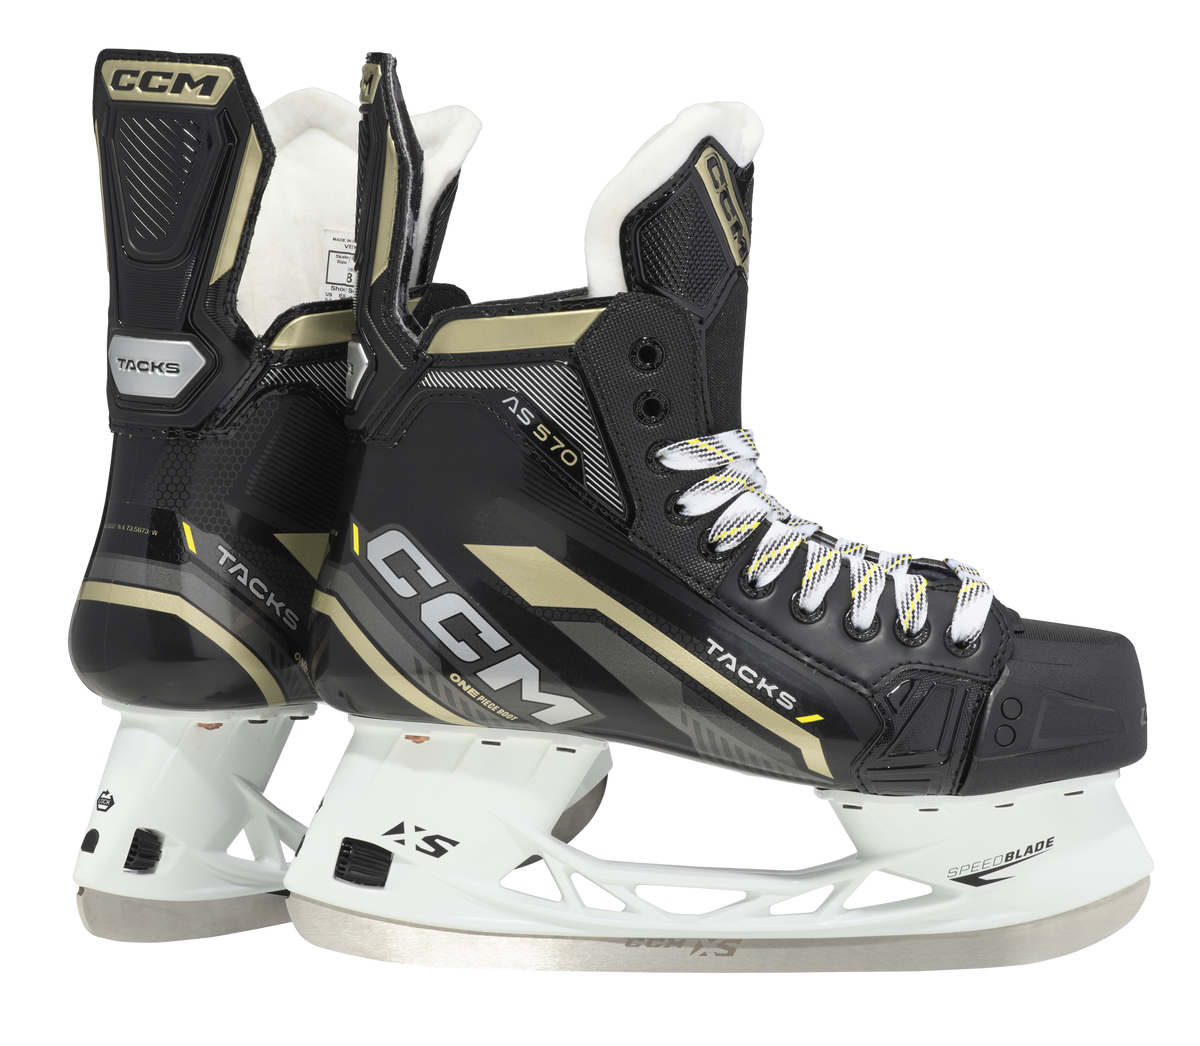 CCM Tacks AS-570 patins de hockey senior